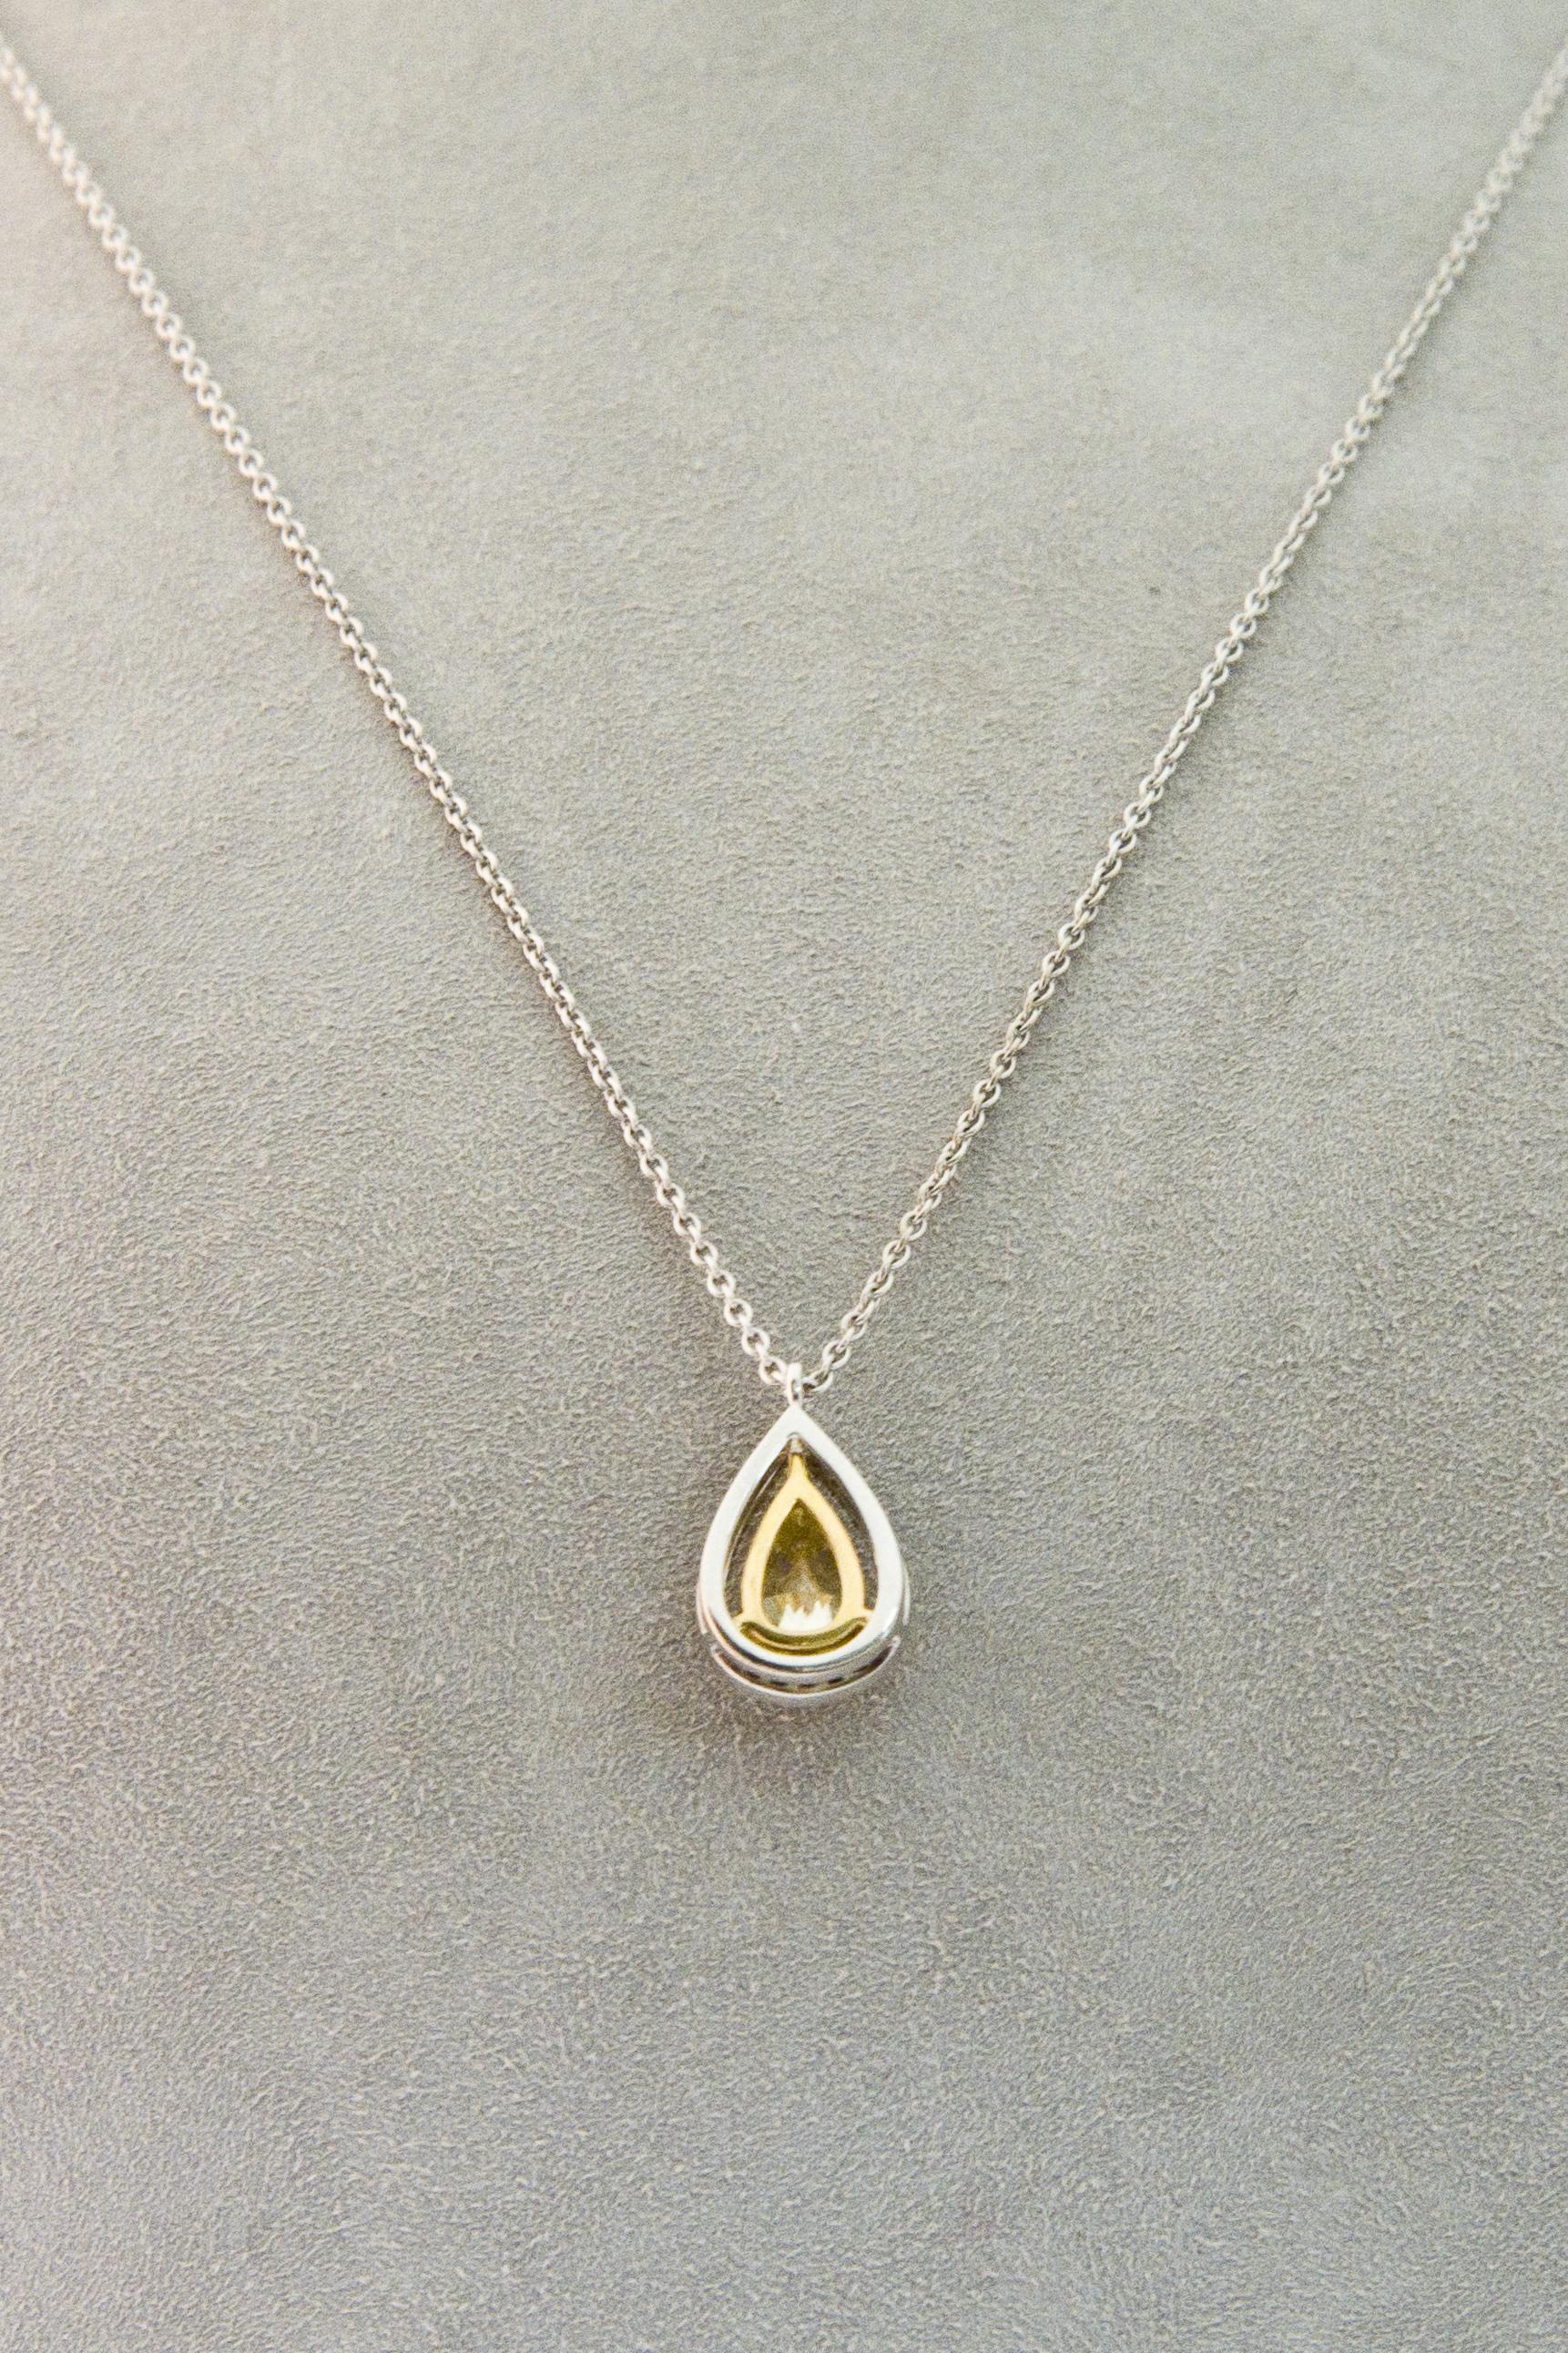 Fancy Yellow Diamond 1.5 ct GIA, White Diamond , White Gold 18 K Pendant Necklace 3